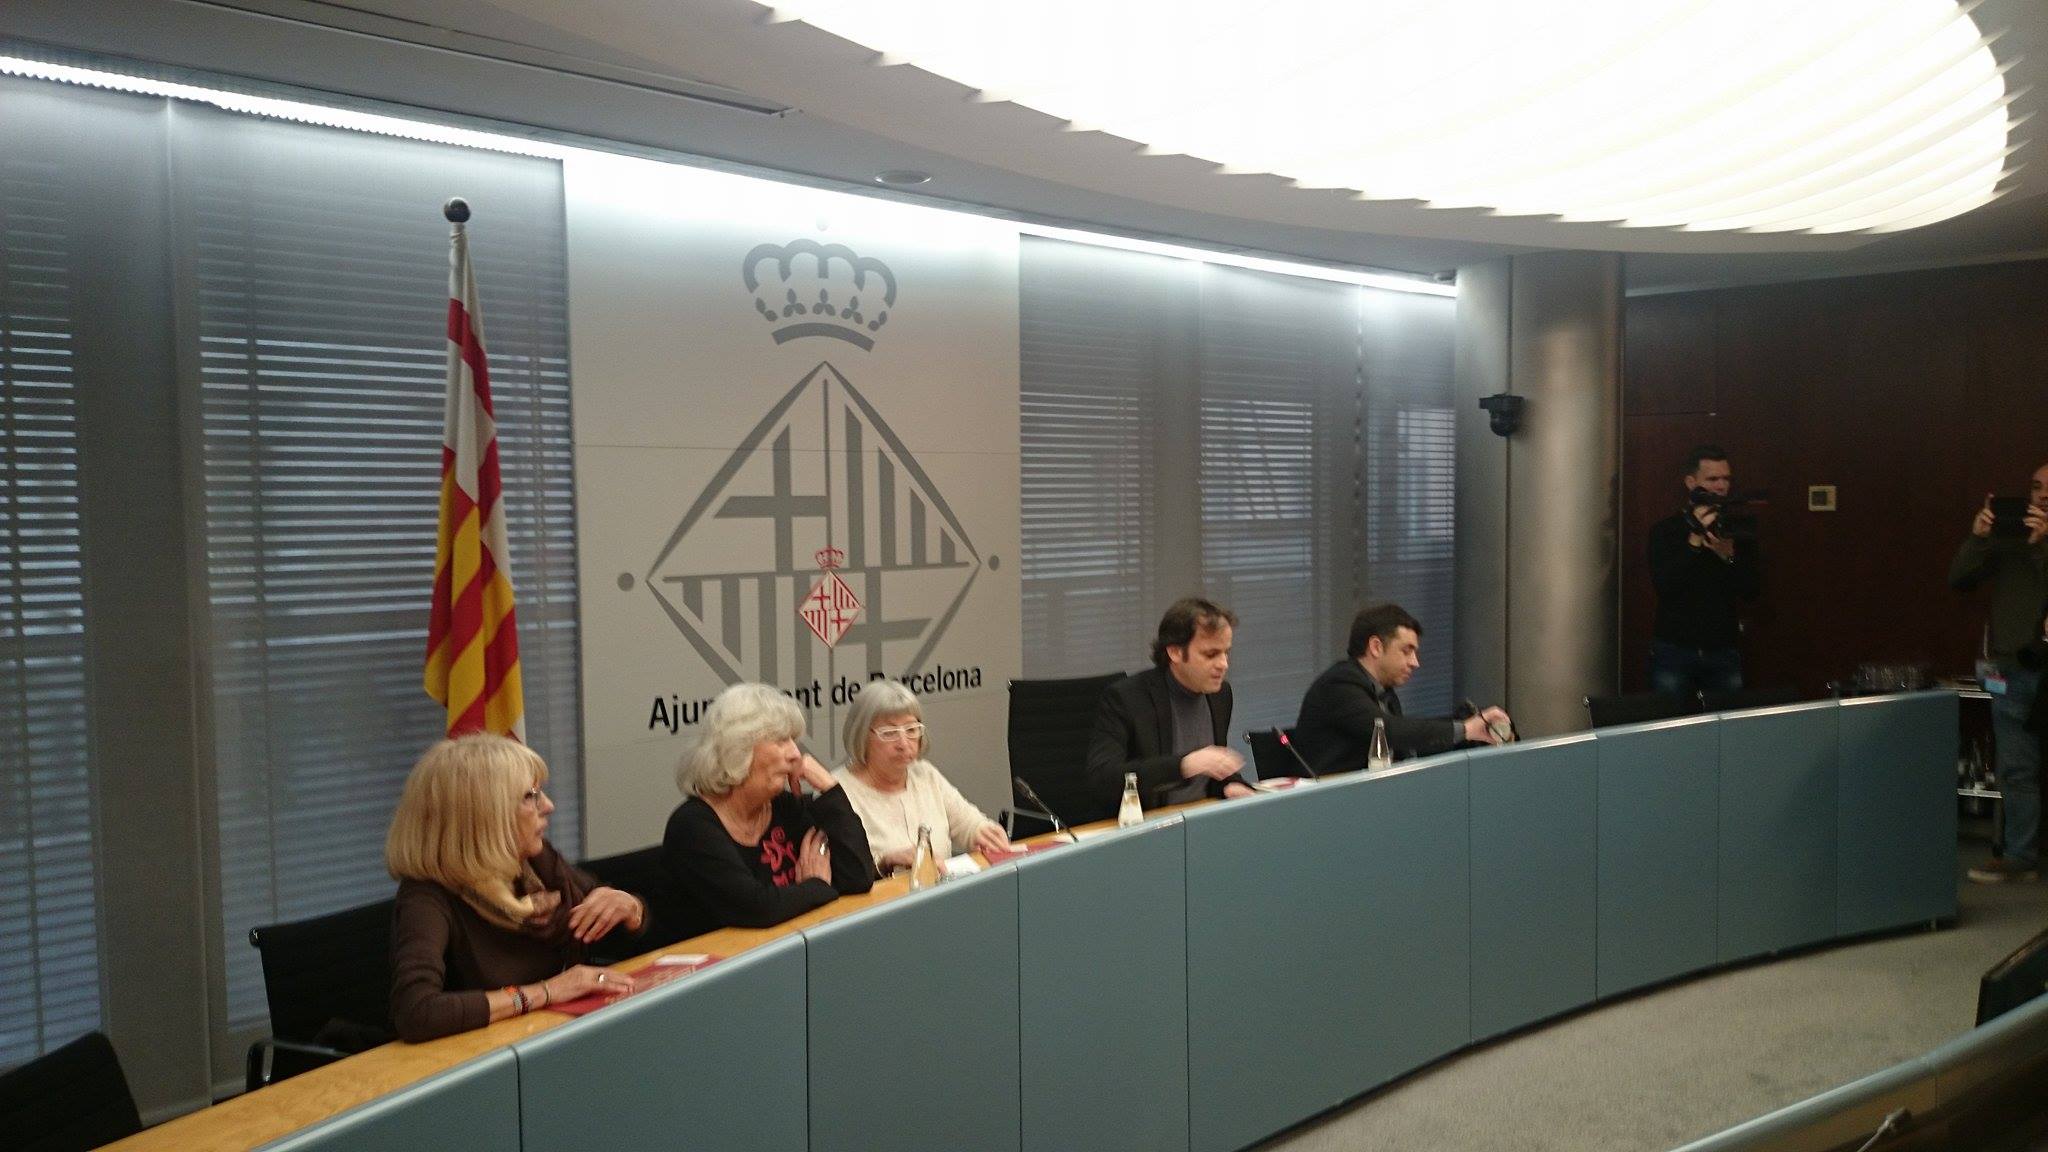 L’Ajuntament de Barcelona impulsarà una querella contra Carlos Rey l’advocat i militar que va signar la pena de mort a Salvador Puig Antich